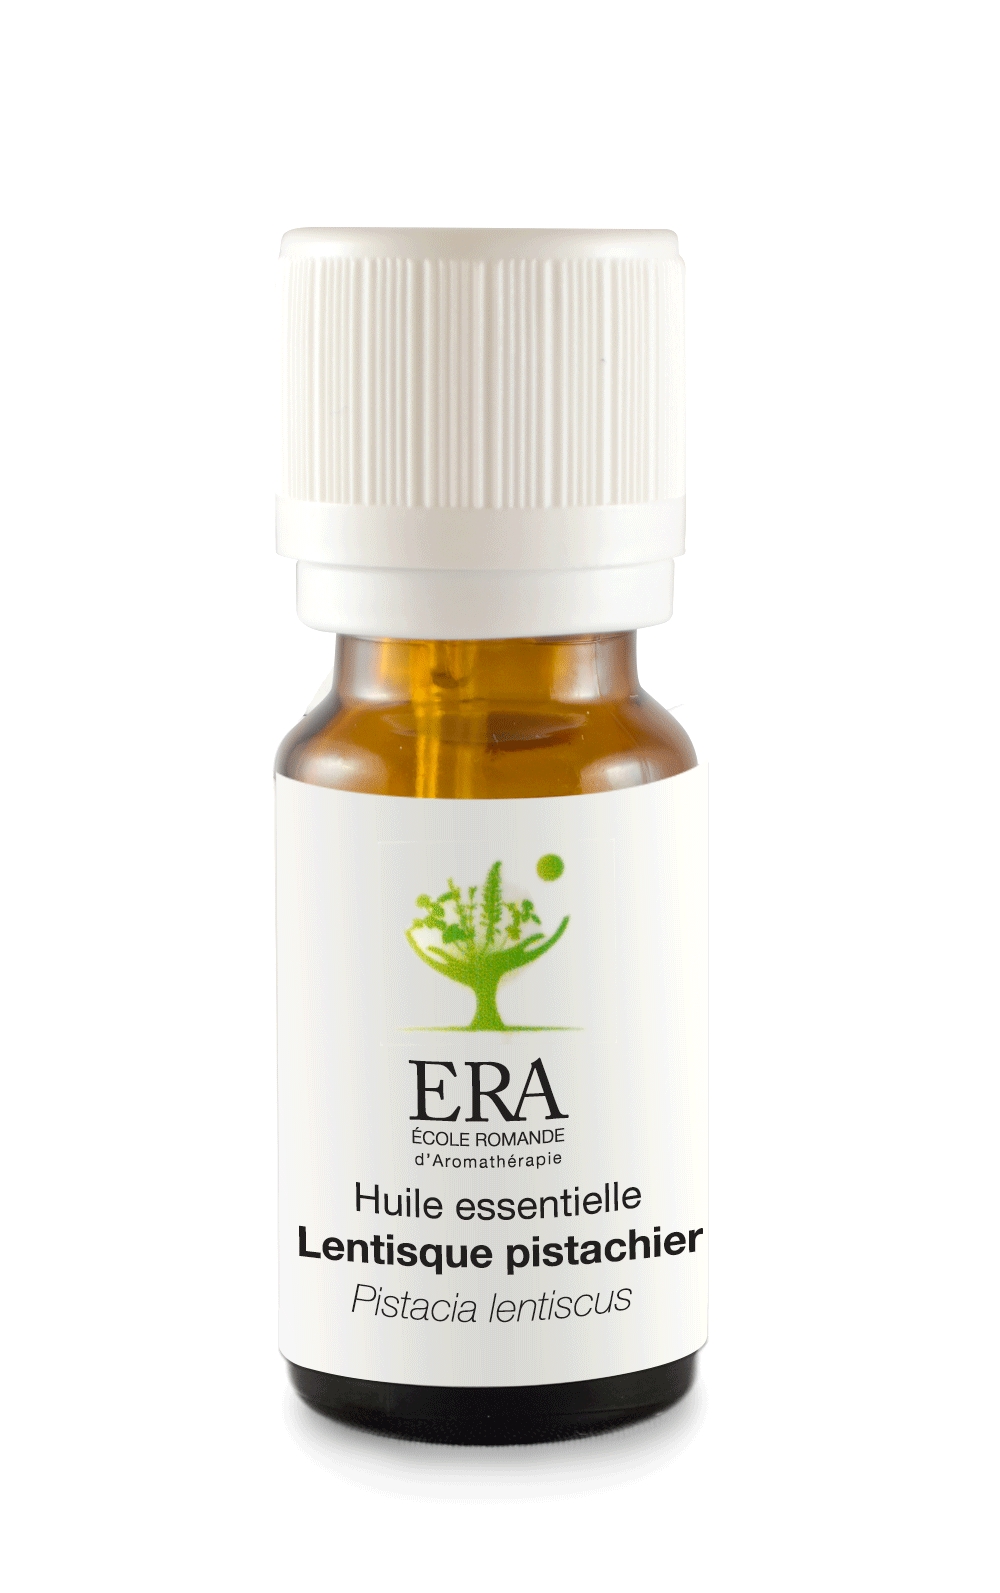 Lentisque pistachier - Pistacia lentiscus - Anacardiacées